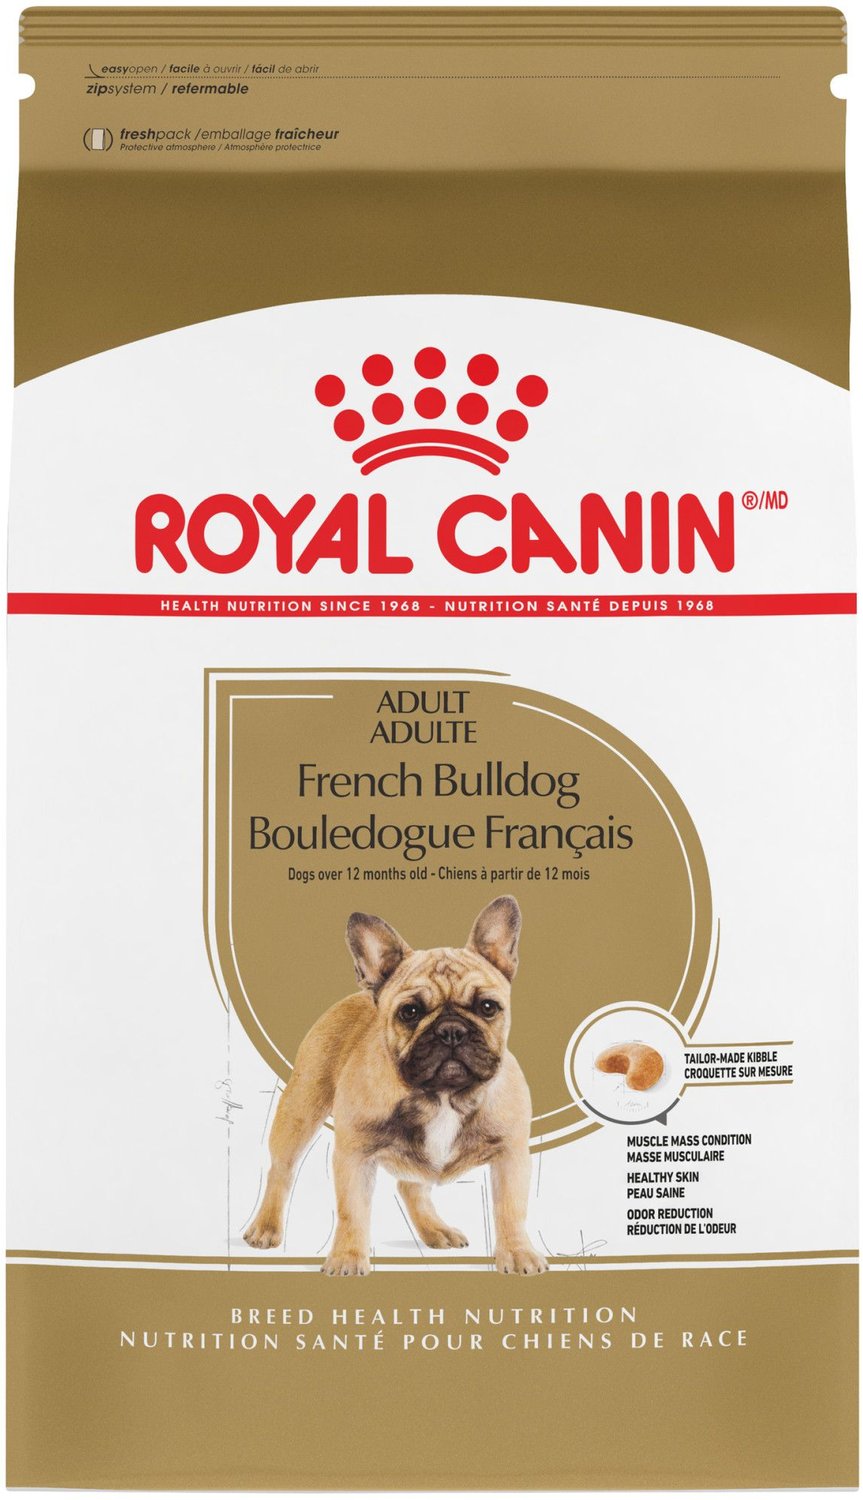 French Bulldog Feeding Chart